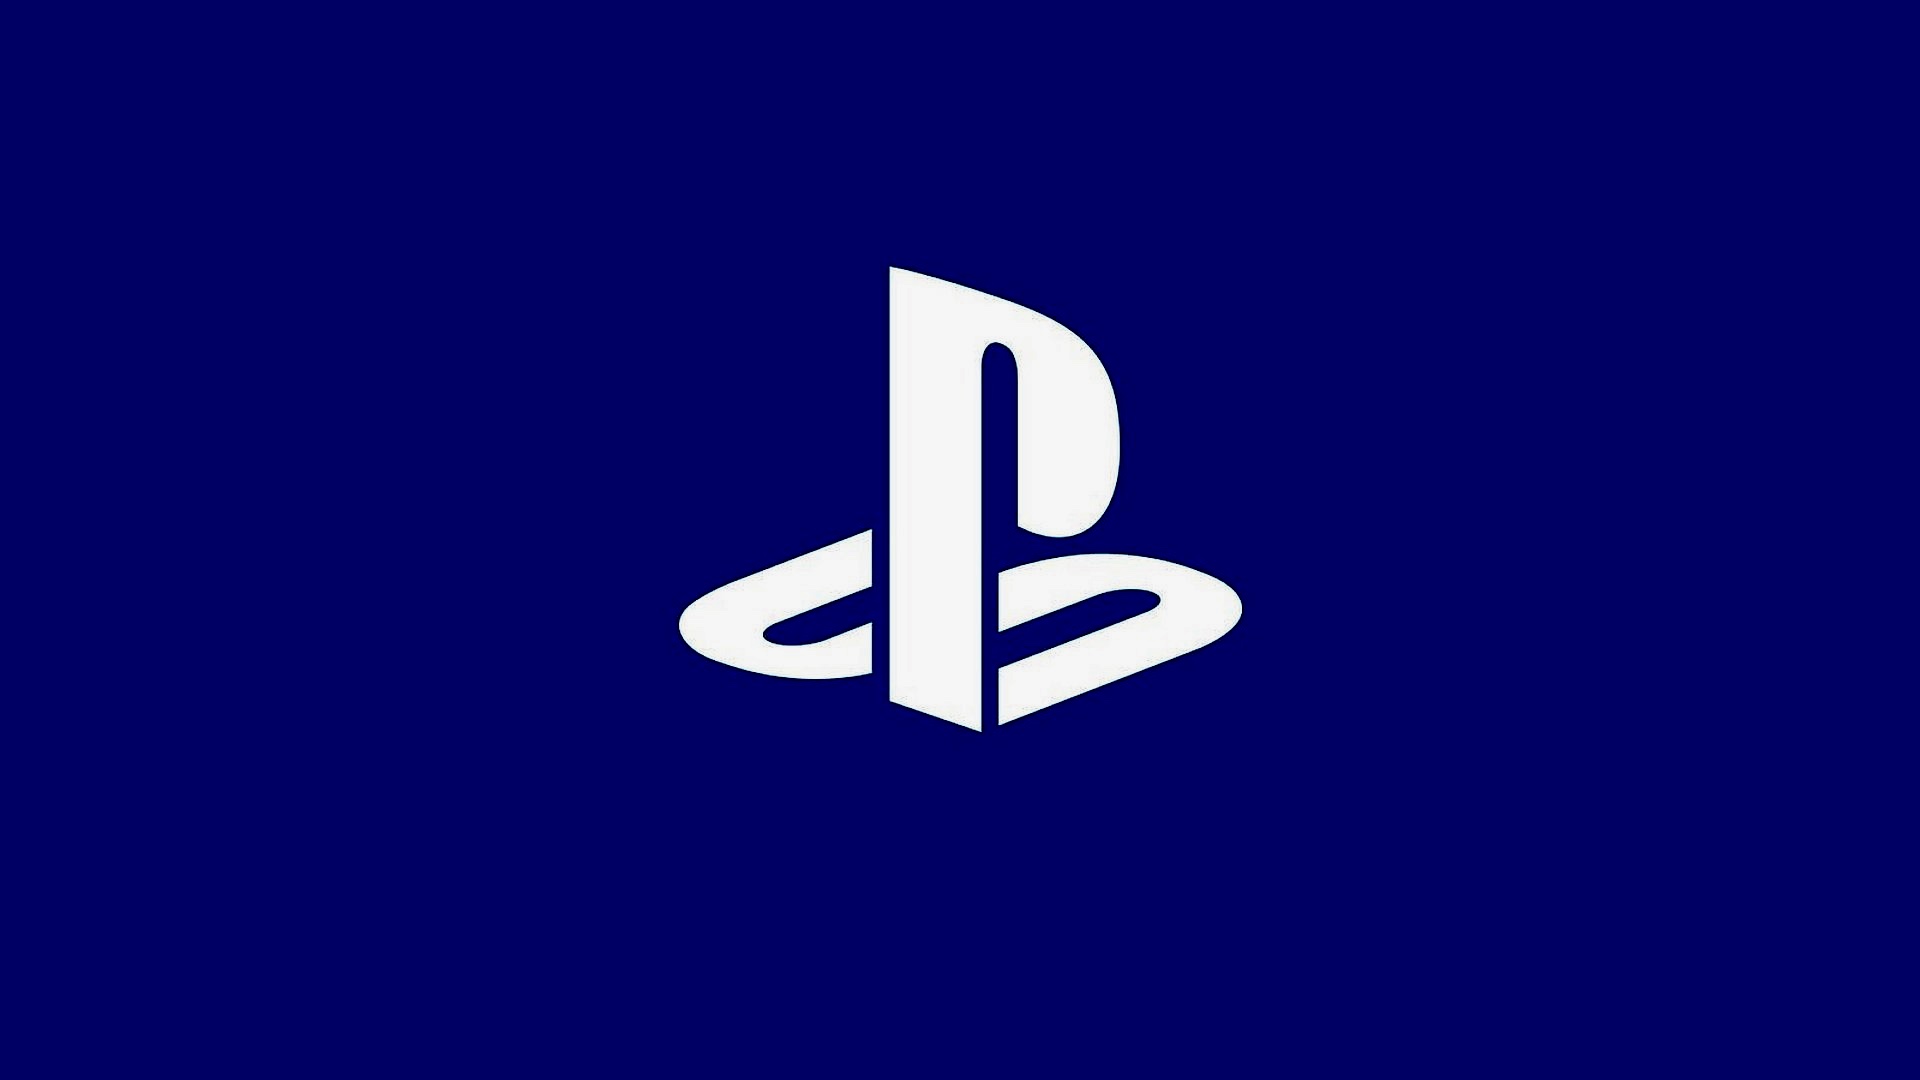 Logotip Playstationa